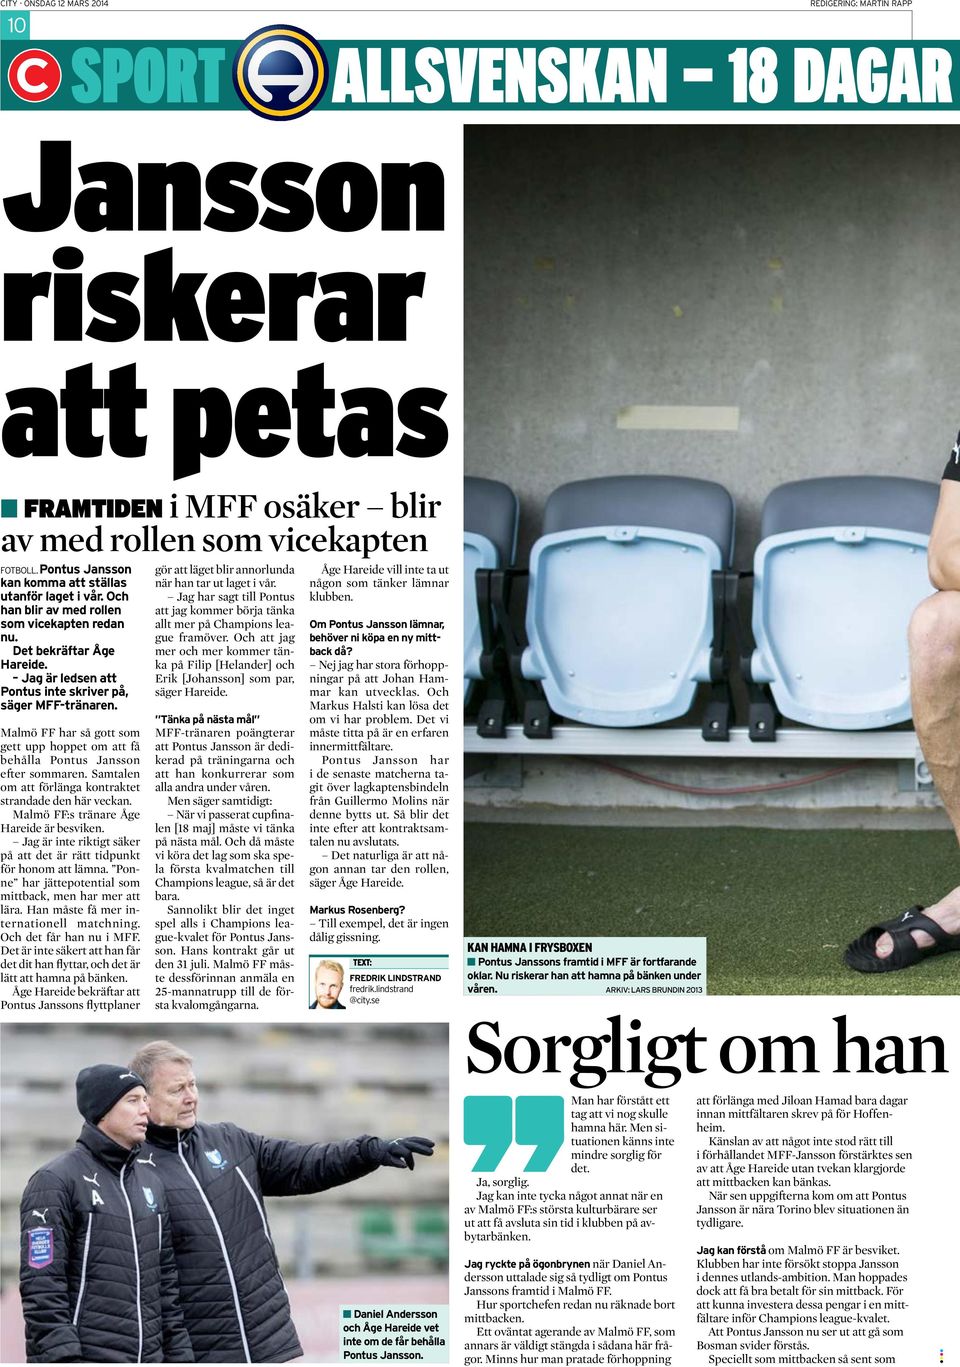 Malmö FF har så gott som gett upp hoppet om att få behålla Pontus Jansson efter sommaren. Samtalen om att förlänga kontraktet strandade den här veckan. Malmö FF:s tränare Åge Hareide är besviken.